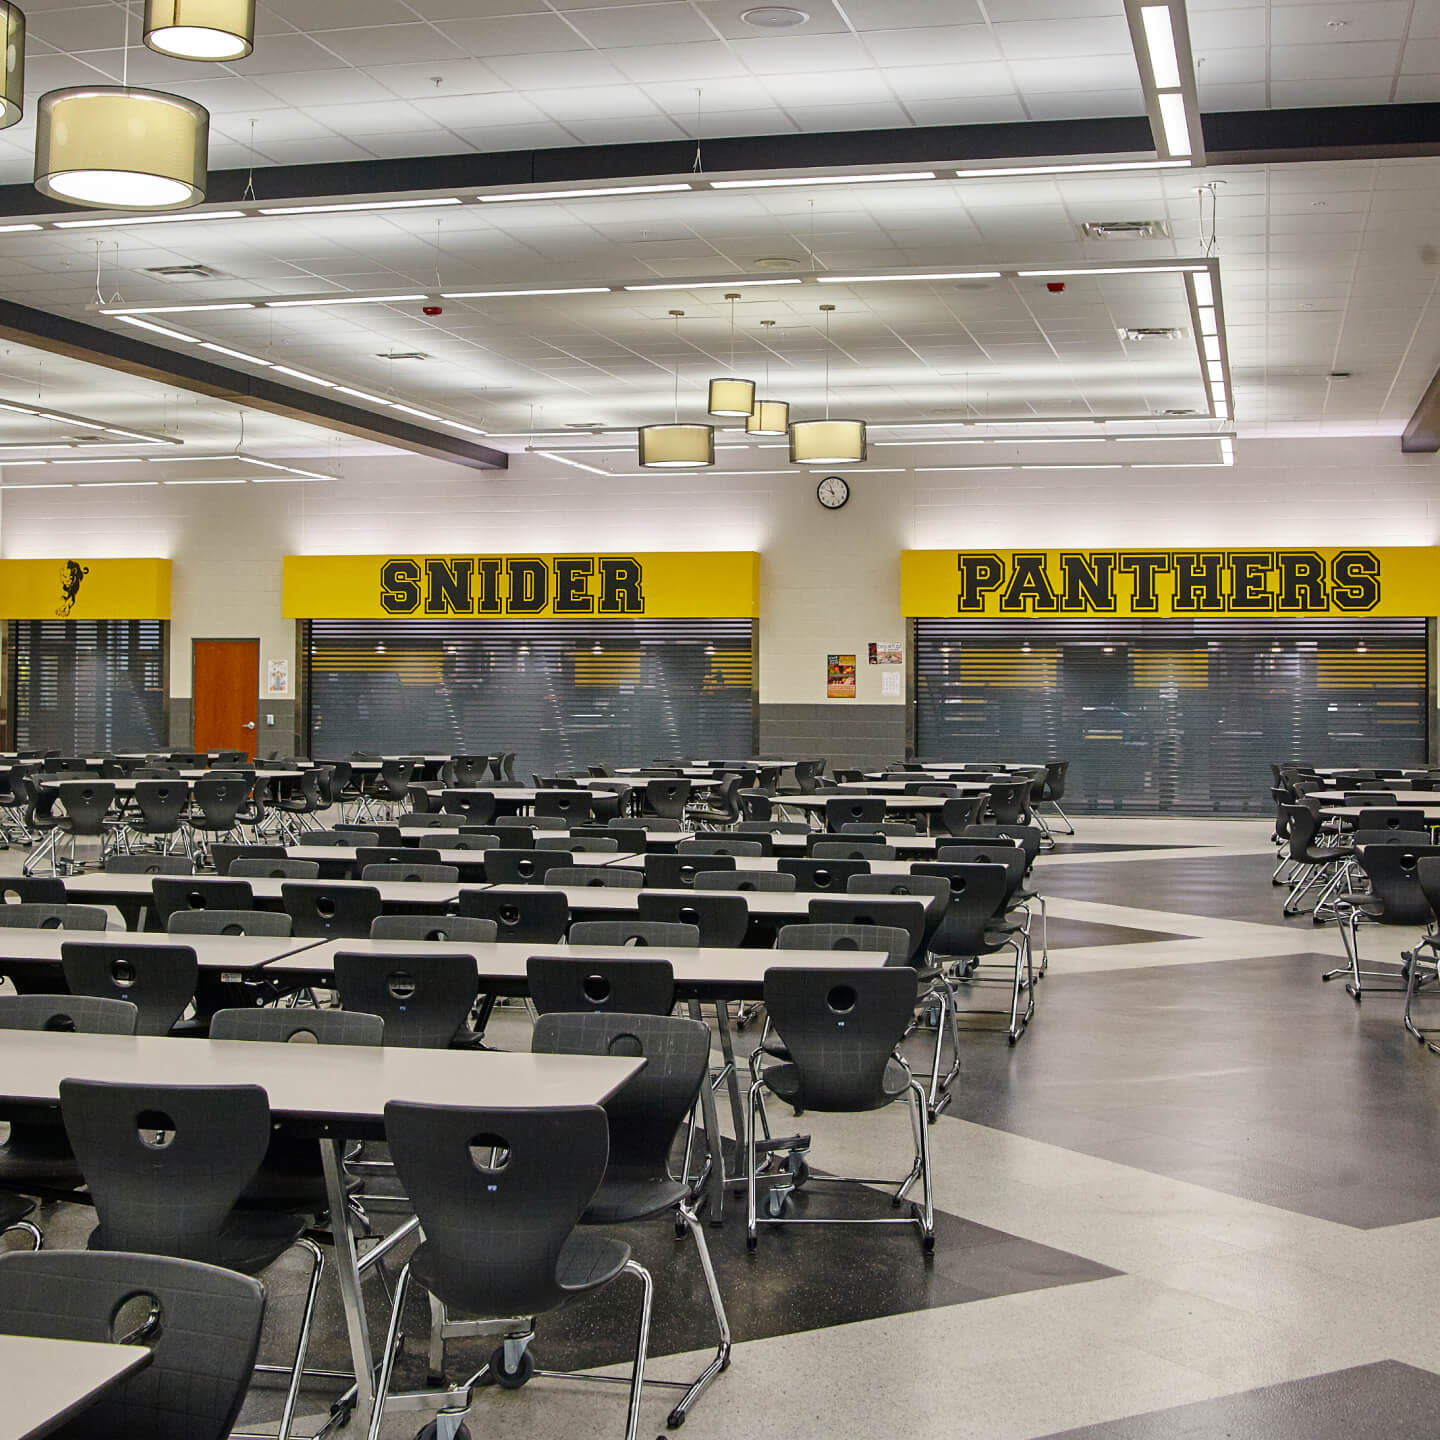 Fort Wayne School's cafeteria